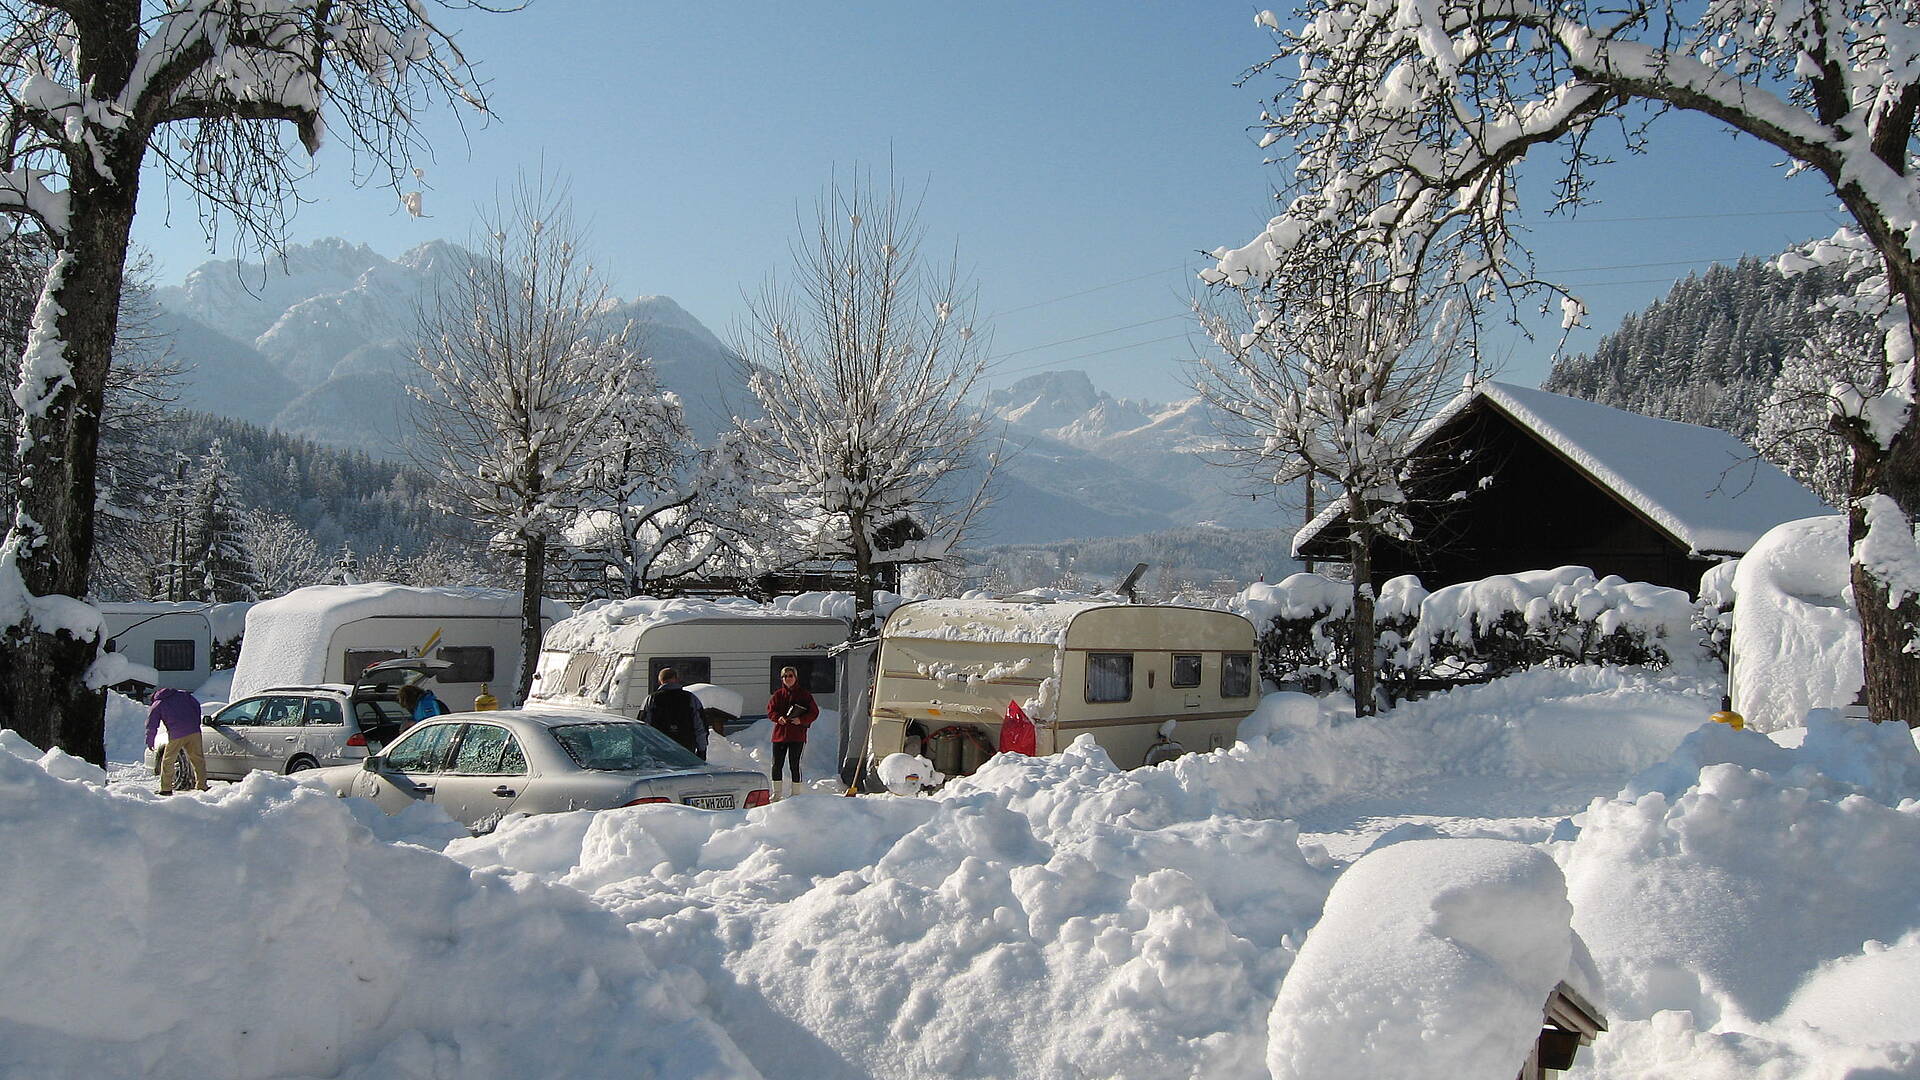 Wintercamping in Kärnten, Camping Schluga